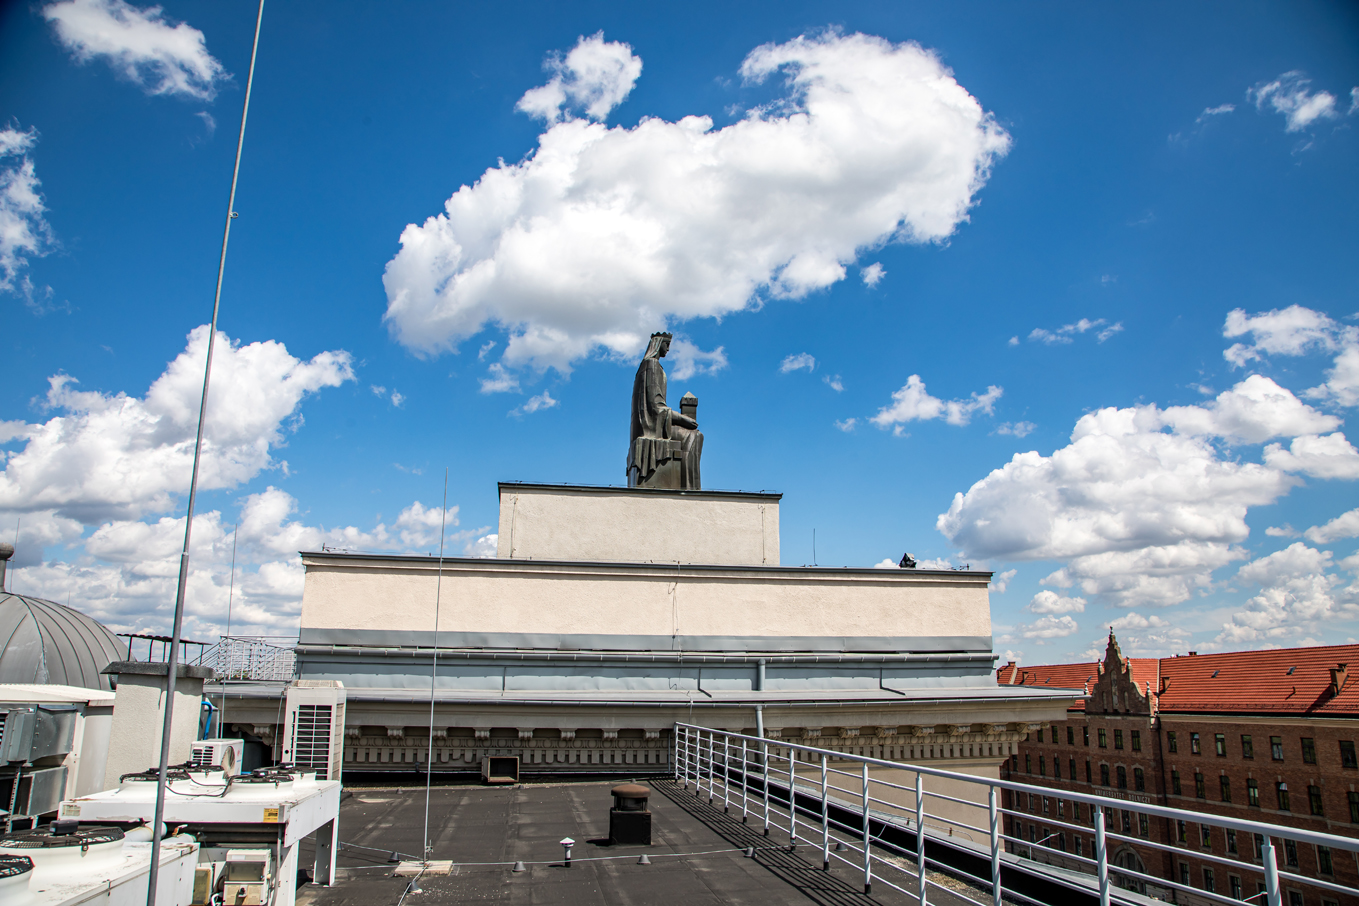 Pomnik świętej Barbary na tle błękitnego nieba. Poniżej pomnika czarny dach, balustrady, srebrne urządzenia klimatyzacyjne. Ujęcie z boku.